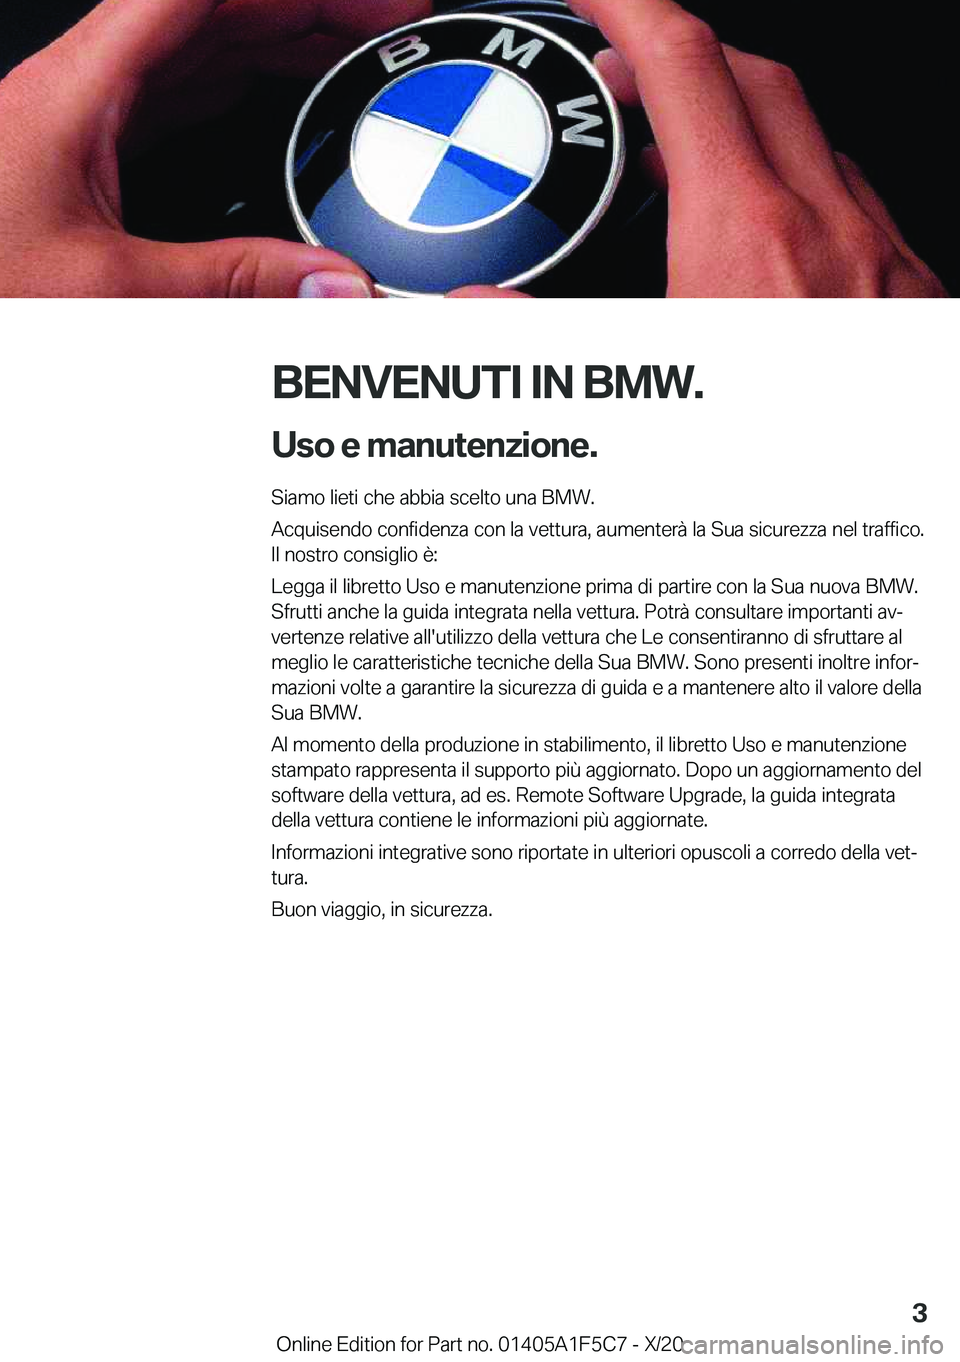 BMW X4 M 2021  Libretti Di Uso E manutenzione (in Italian) �B�E�N�V�E�N�U�T�I��I�N��B�M�W�.�U�s�o��e��m�a�n�u�t�e�n�z�i�o�n�e�.
�S�i�a�m�o��l�i�e�t�i��c�h�e��a�b�b�i�a��s�c�e�l�t�o��u�n�a��B�M�W�.
�A�c�q�u�i�s�e�n�d�o��c�o�n�f�i�d�e�n�z�a��c�o�n�